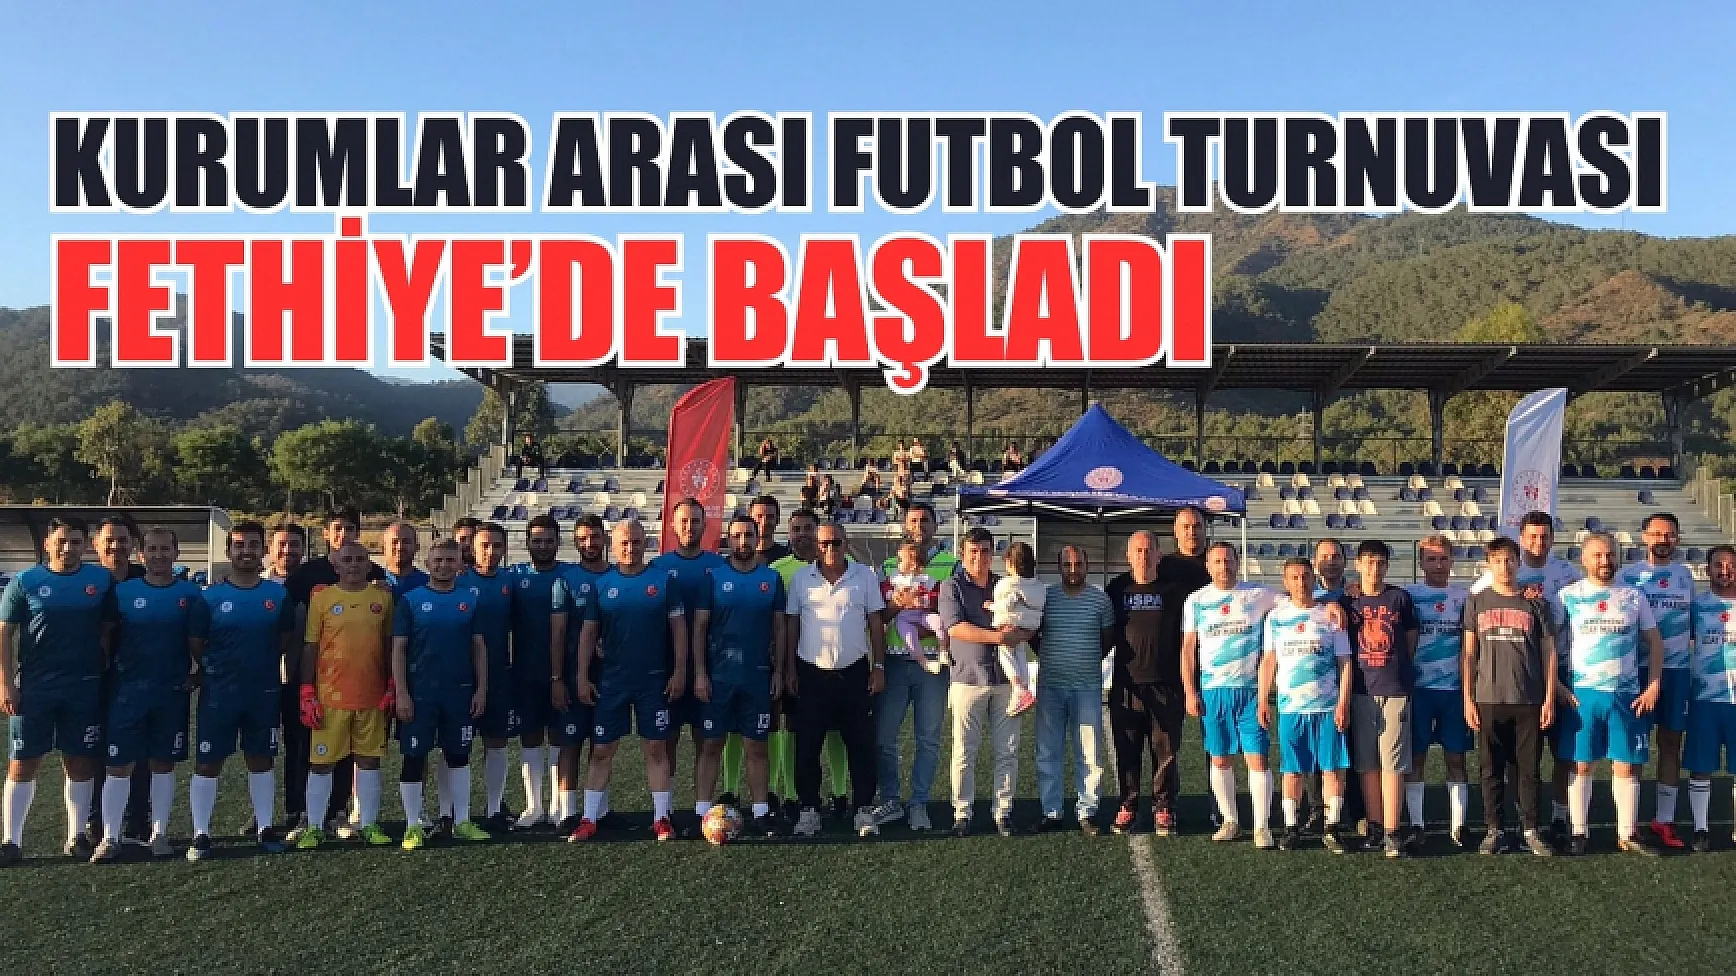 Kurumlar Arası Futbol Turnuvası Fethiye’de başladı